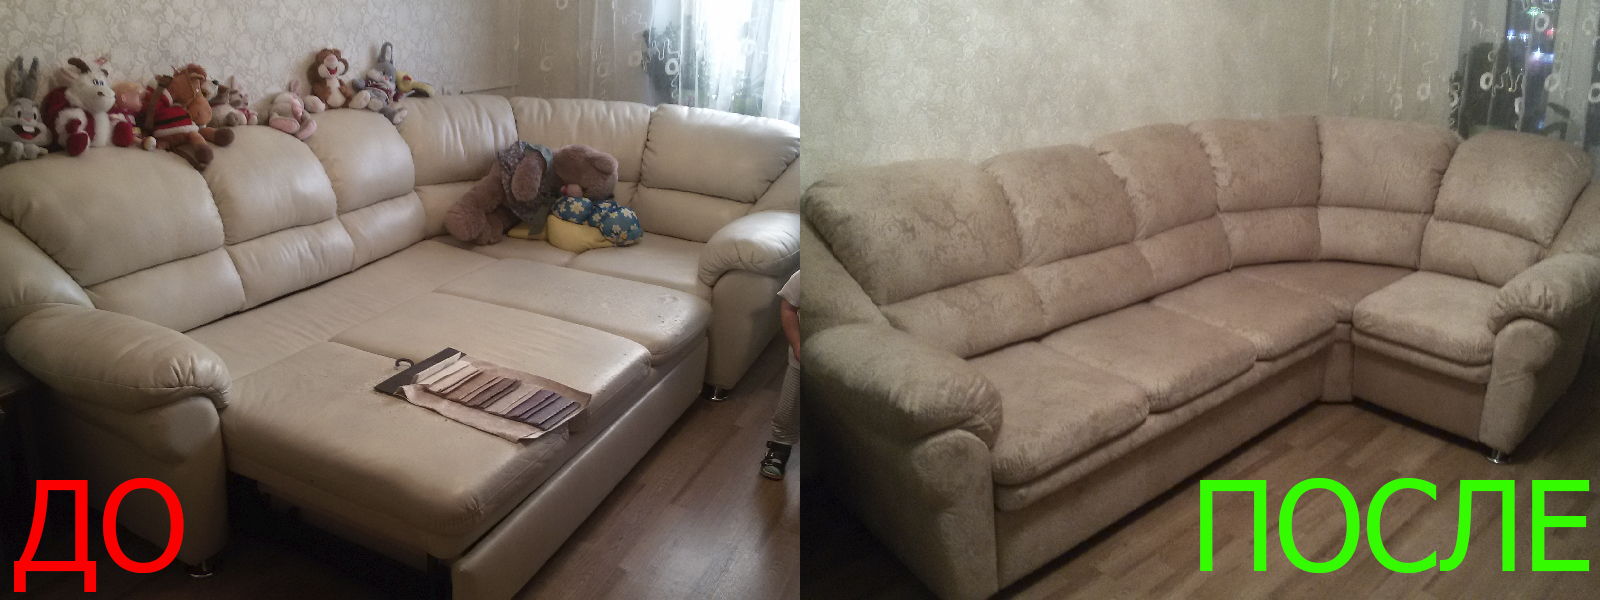 Ремонт диванов искусственной кожей в Евпатории от опытных мастеров компании MebelProfi - 100% гарантия